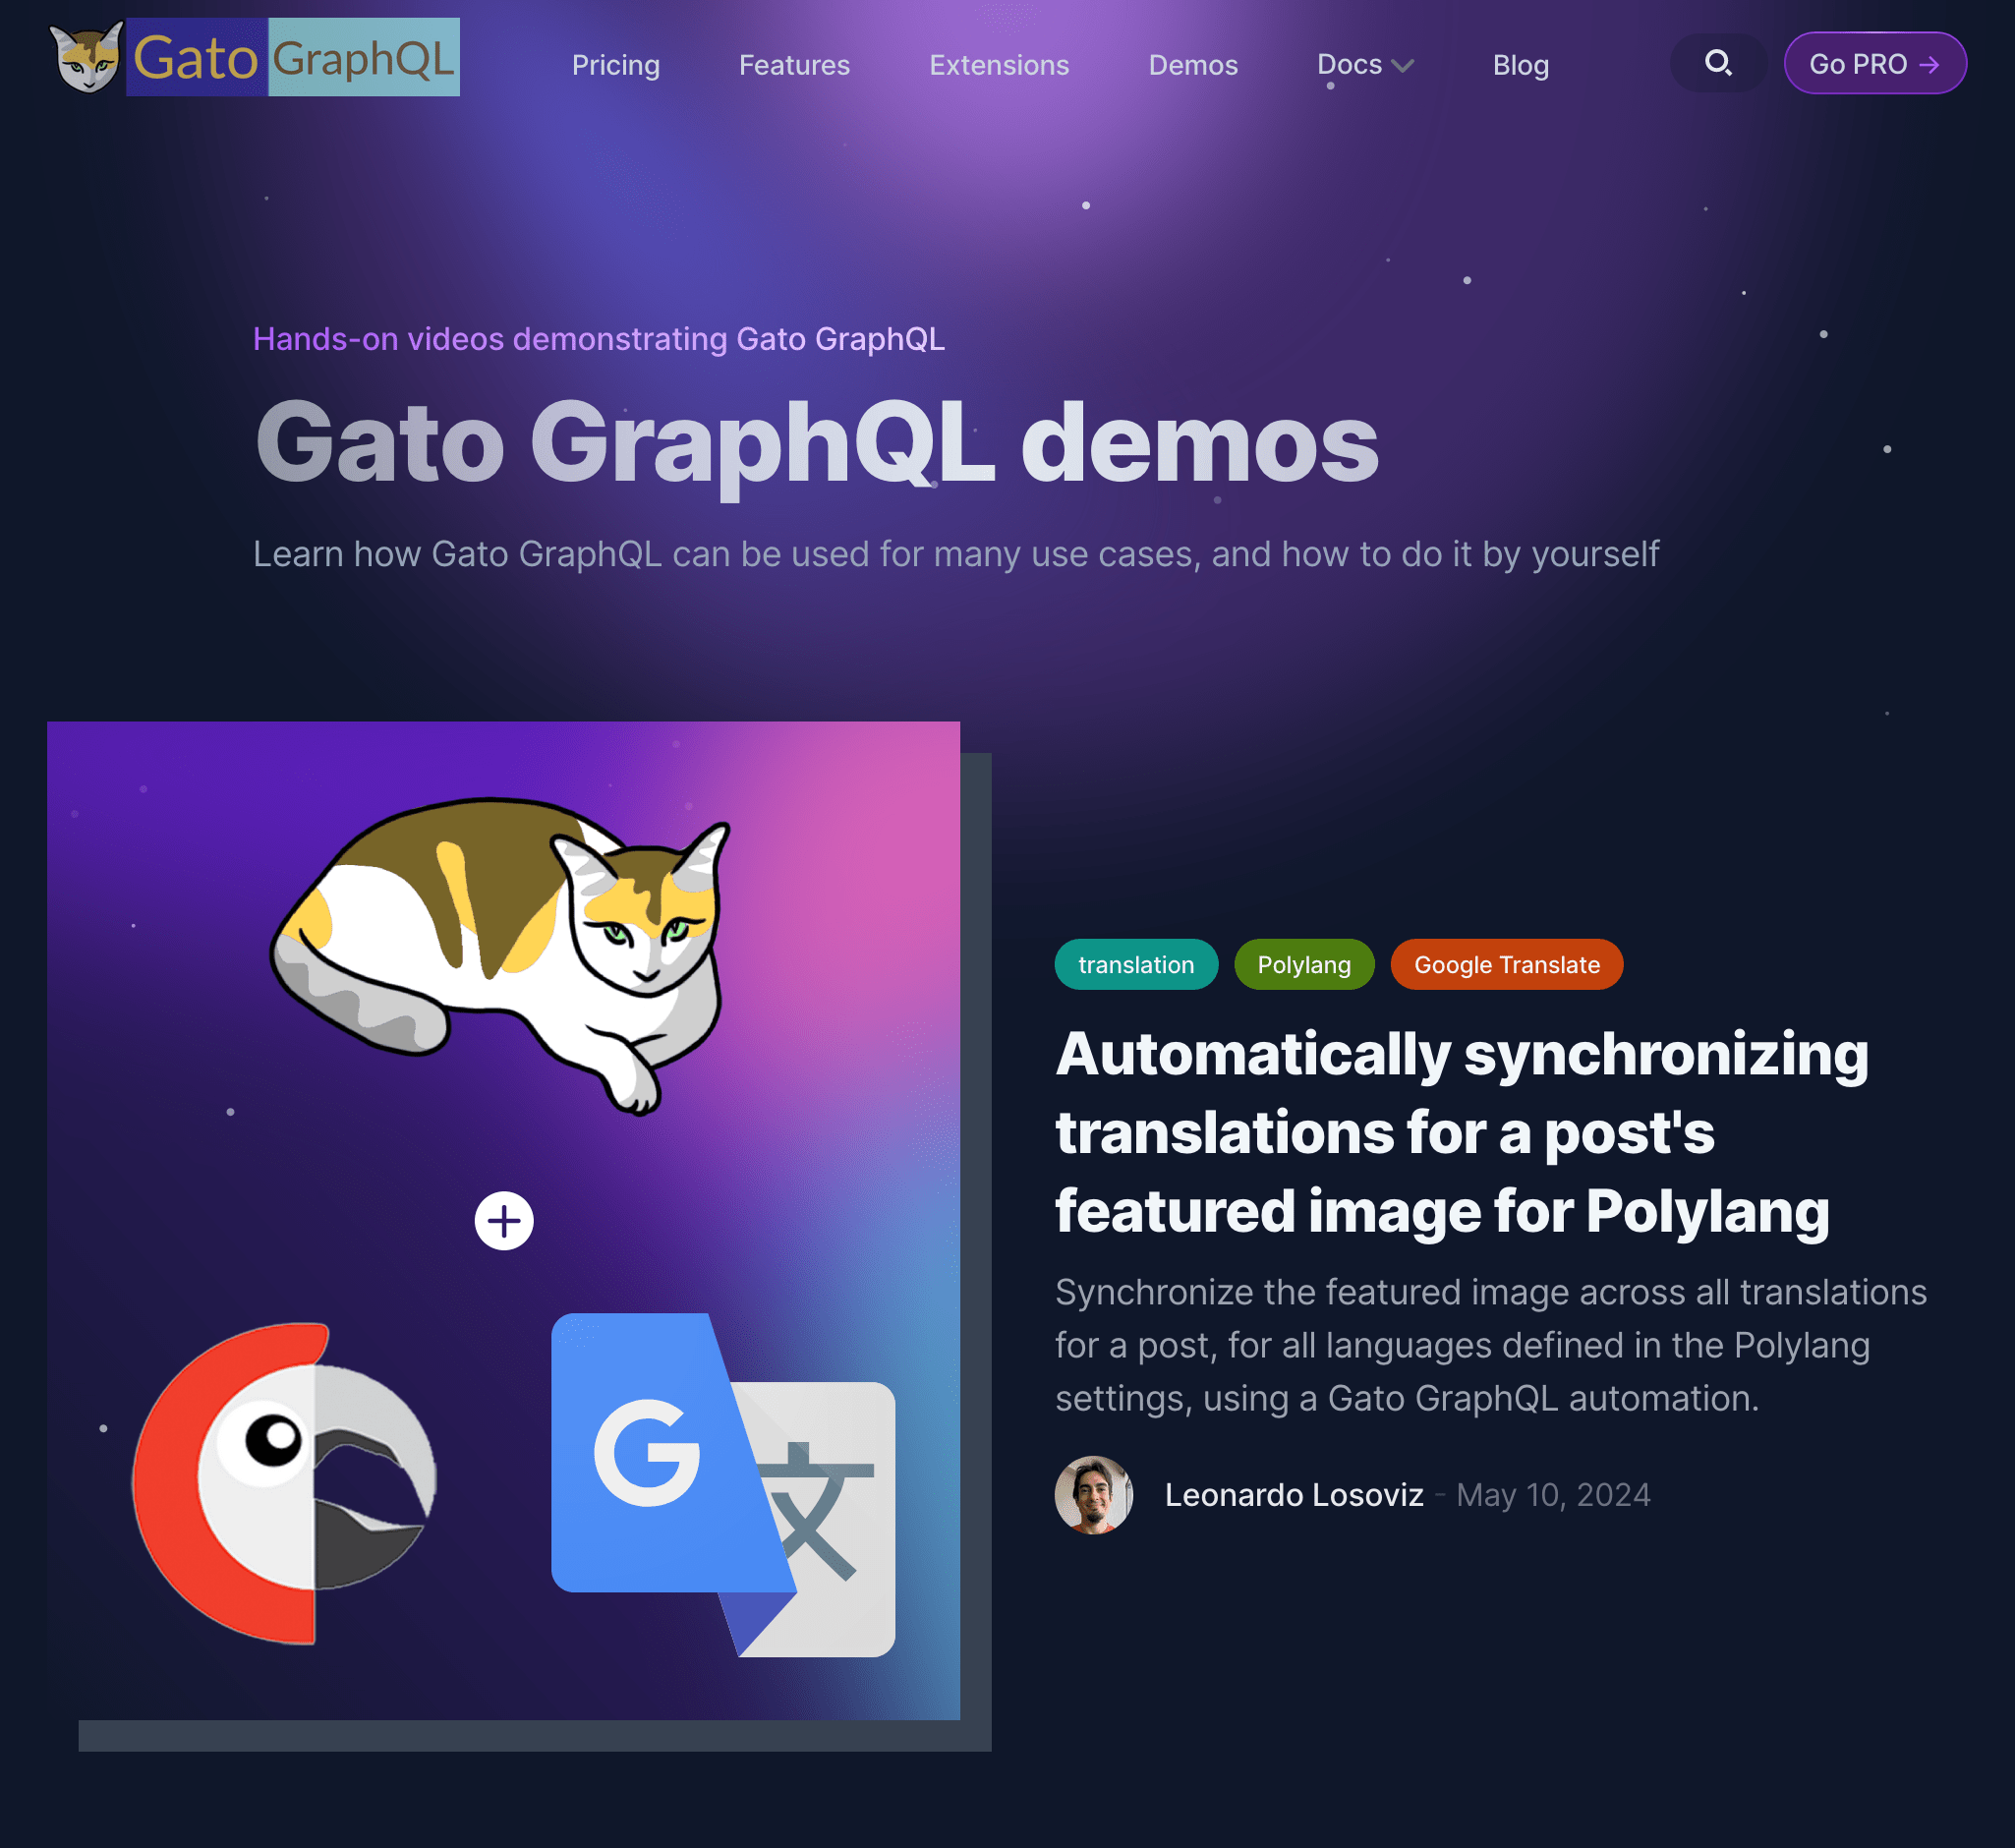 Demos page in the Gato GraphQL's website